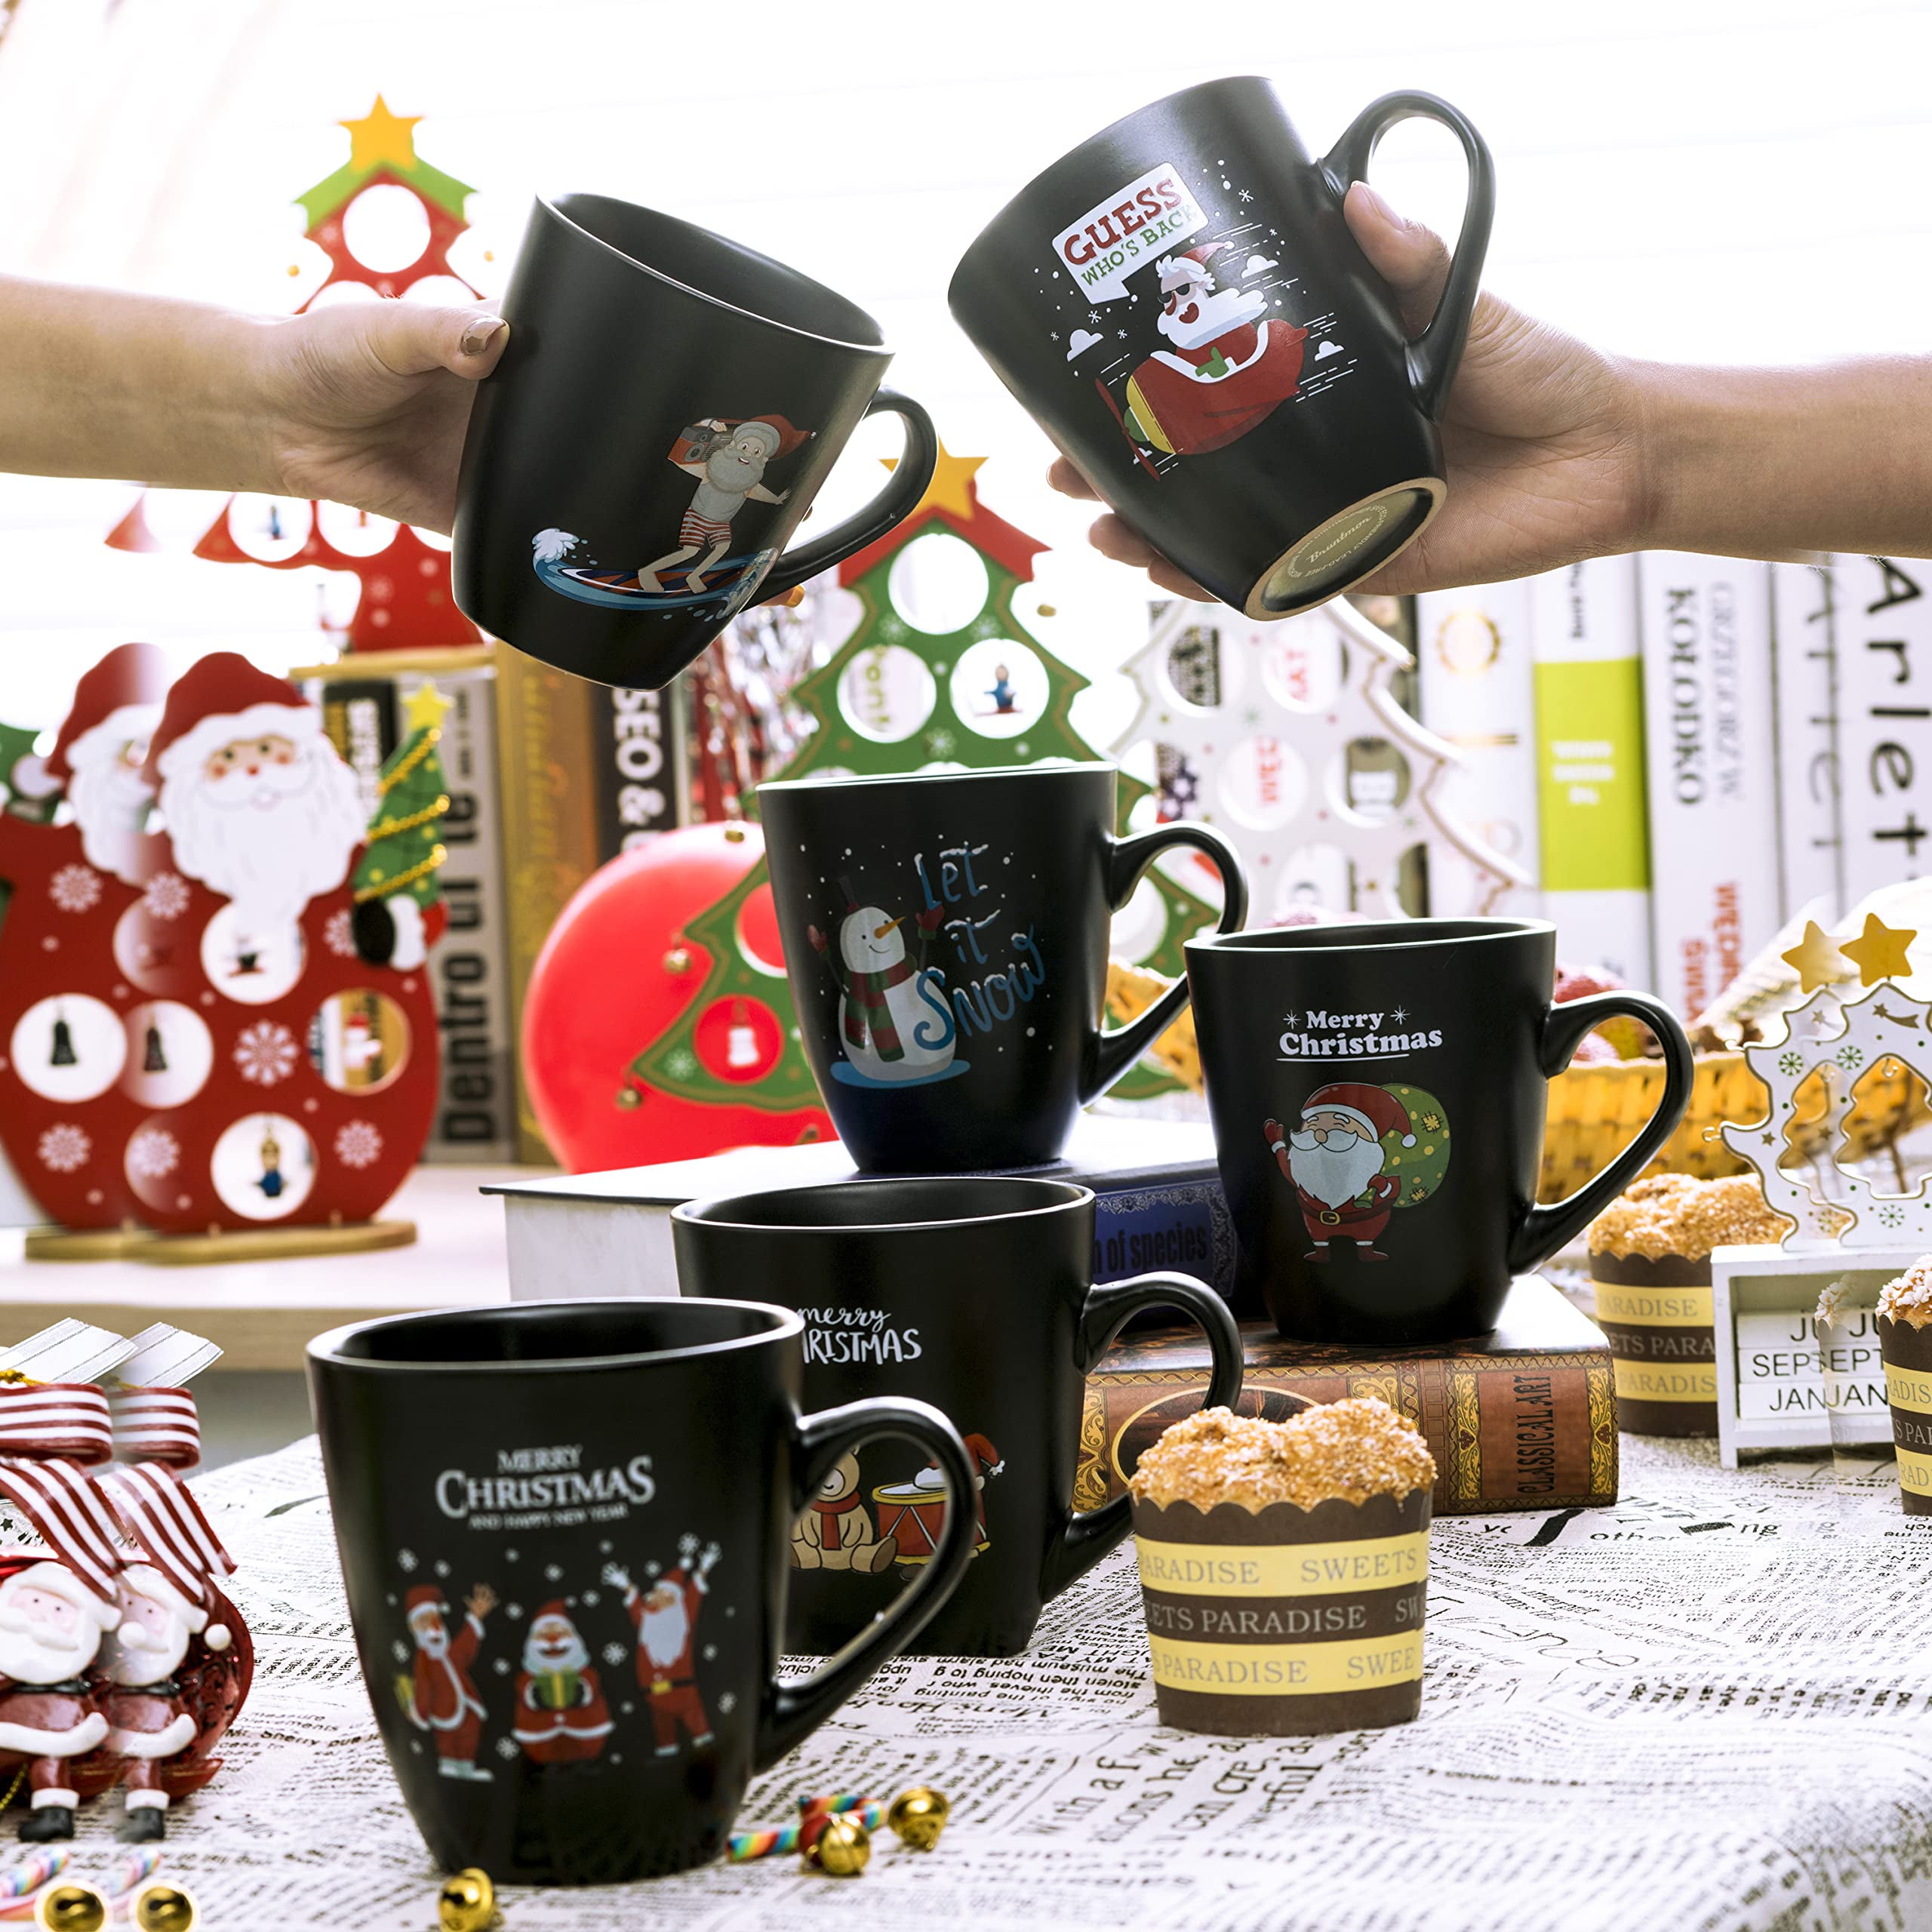 Bruntmor  Christmas Mug Gift Set 16 Oz Ceramic Holiday Coffee Mugs Funny 